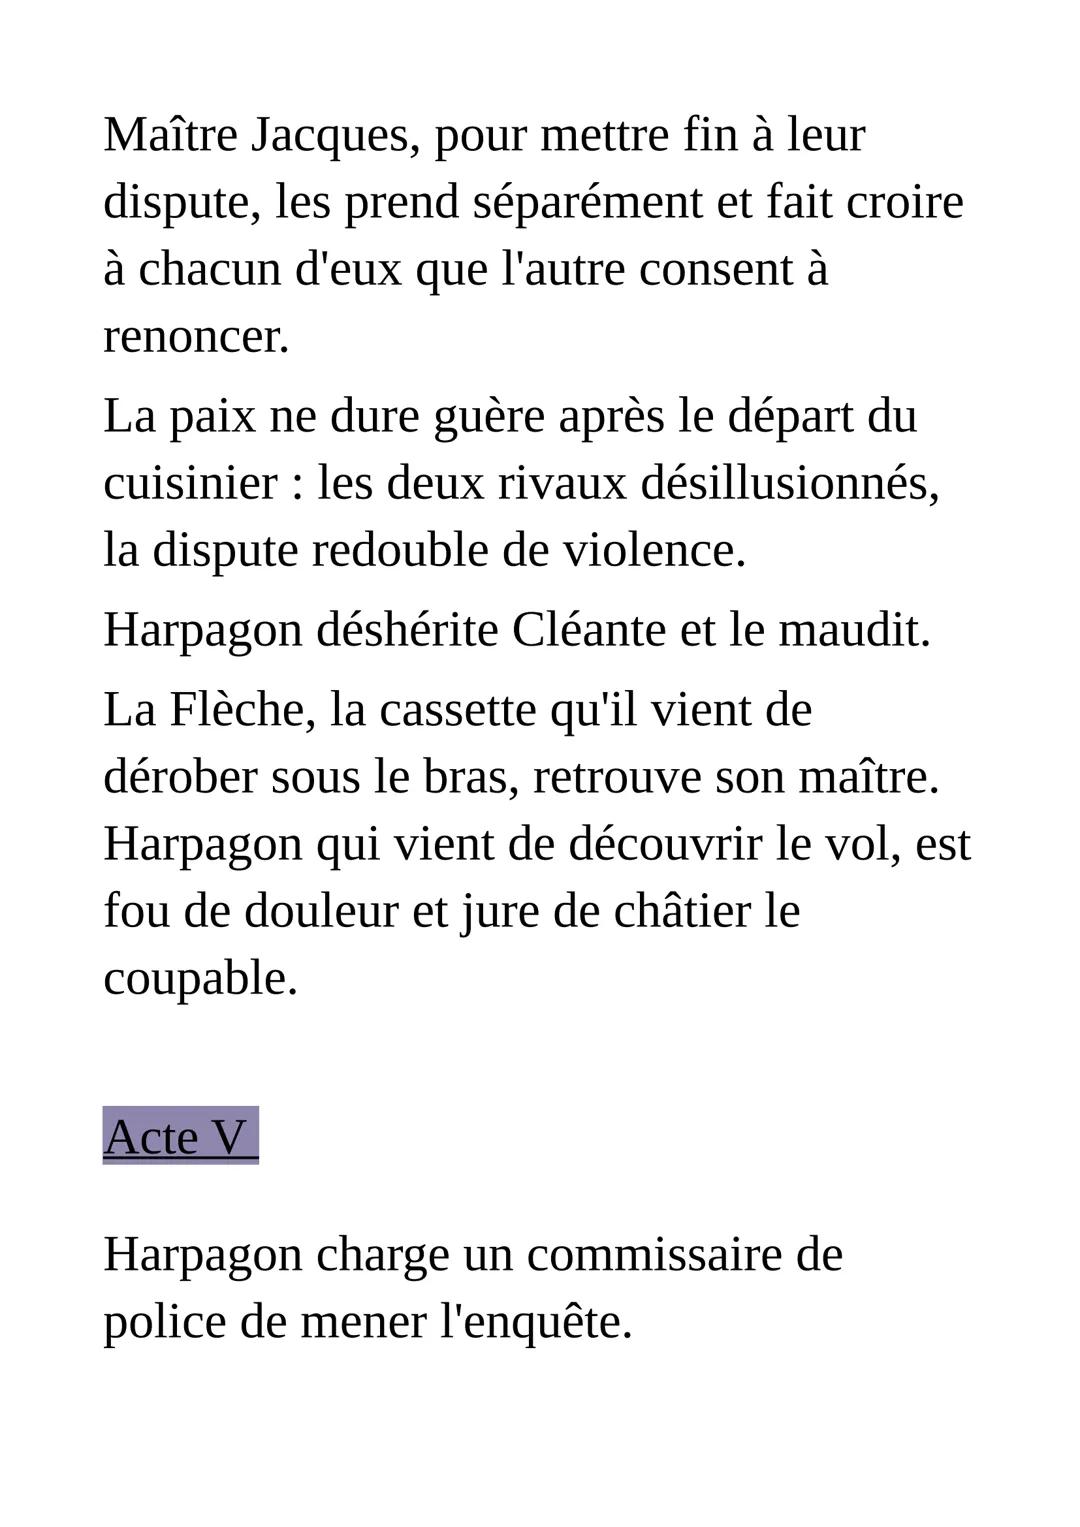 Résumé de l'Avare de Molière
Comédie en prose, en cinq actes
Acte premier
A Paris, dans la maison du riche veuf
Harpagon, ses deux enfants É